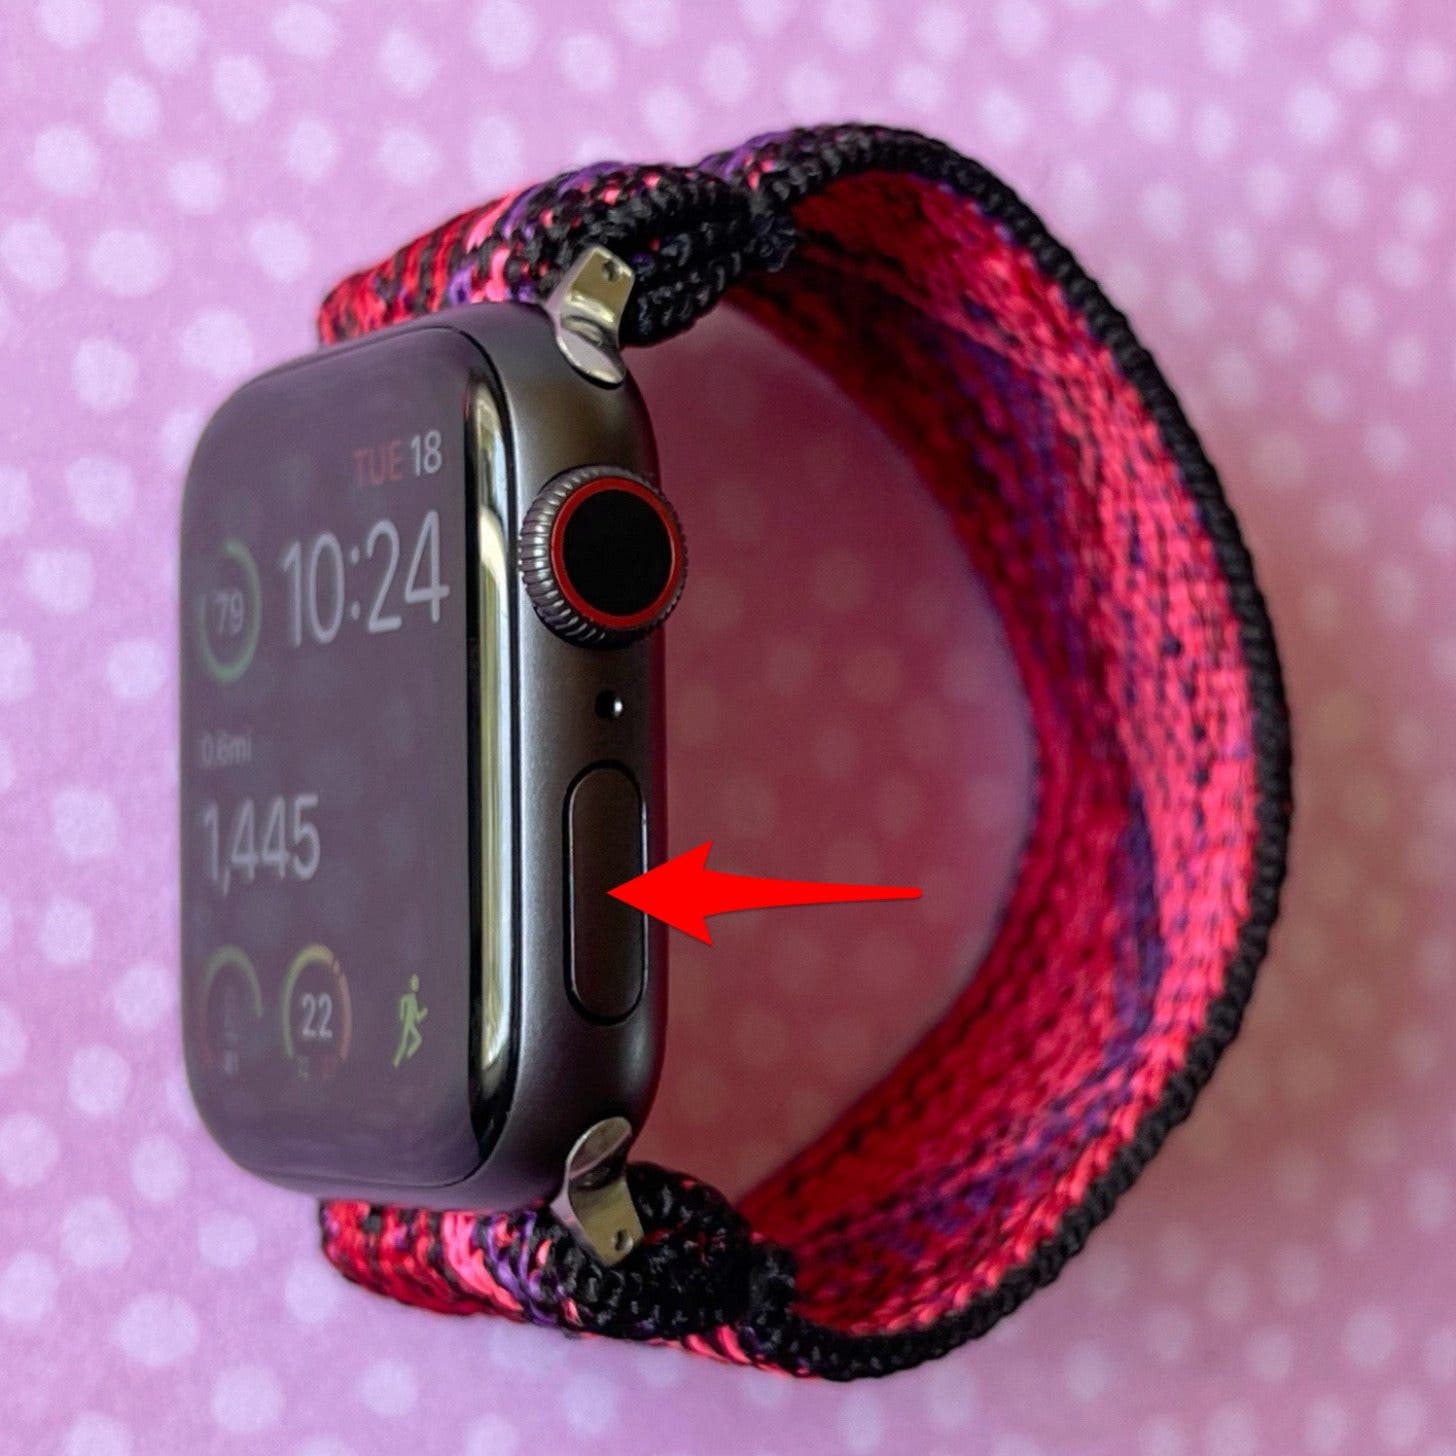 Seitentaste drücken: So schließen Sie die App auf der Apple Watch